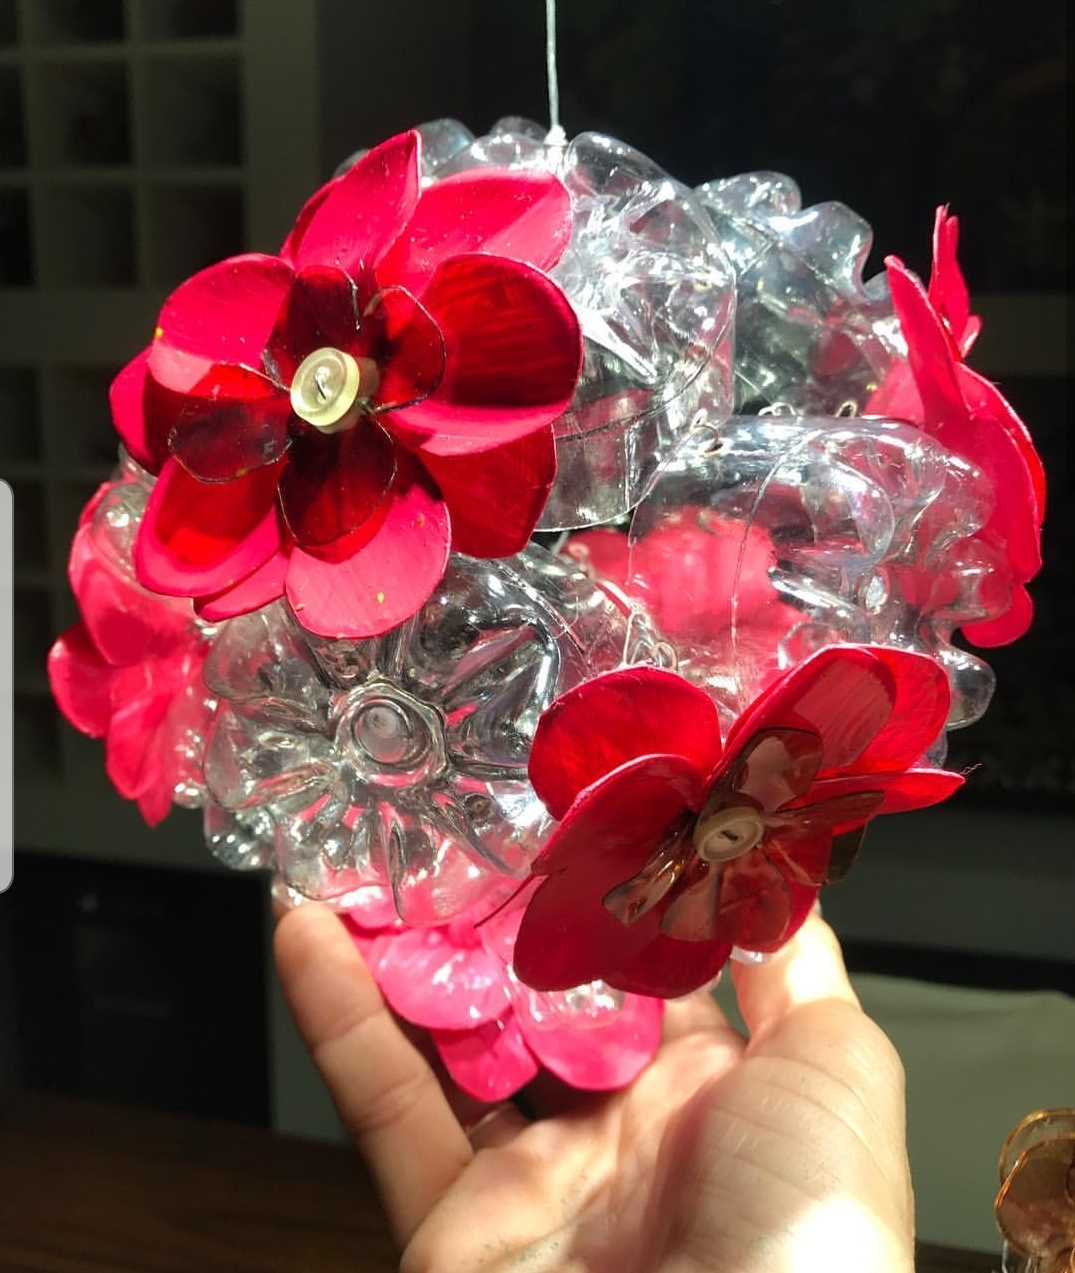 Artista plástica Ana Selma apresenta "Flores de Mainha" em shopping